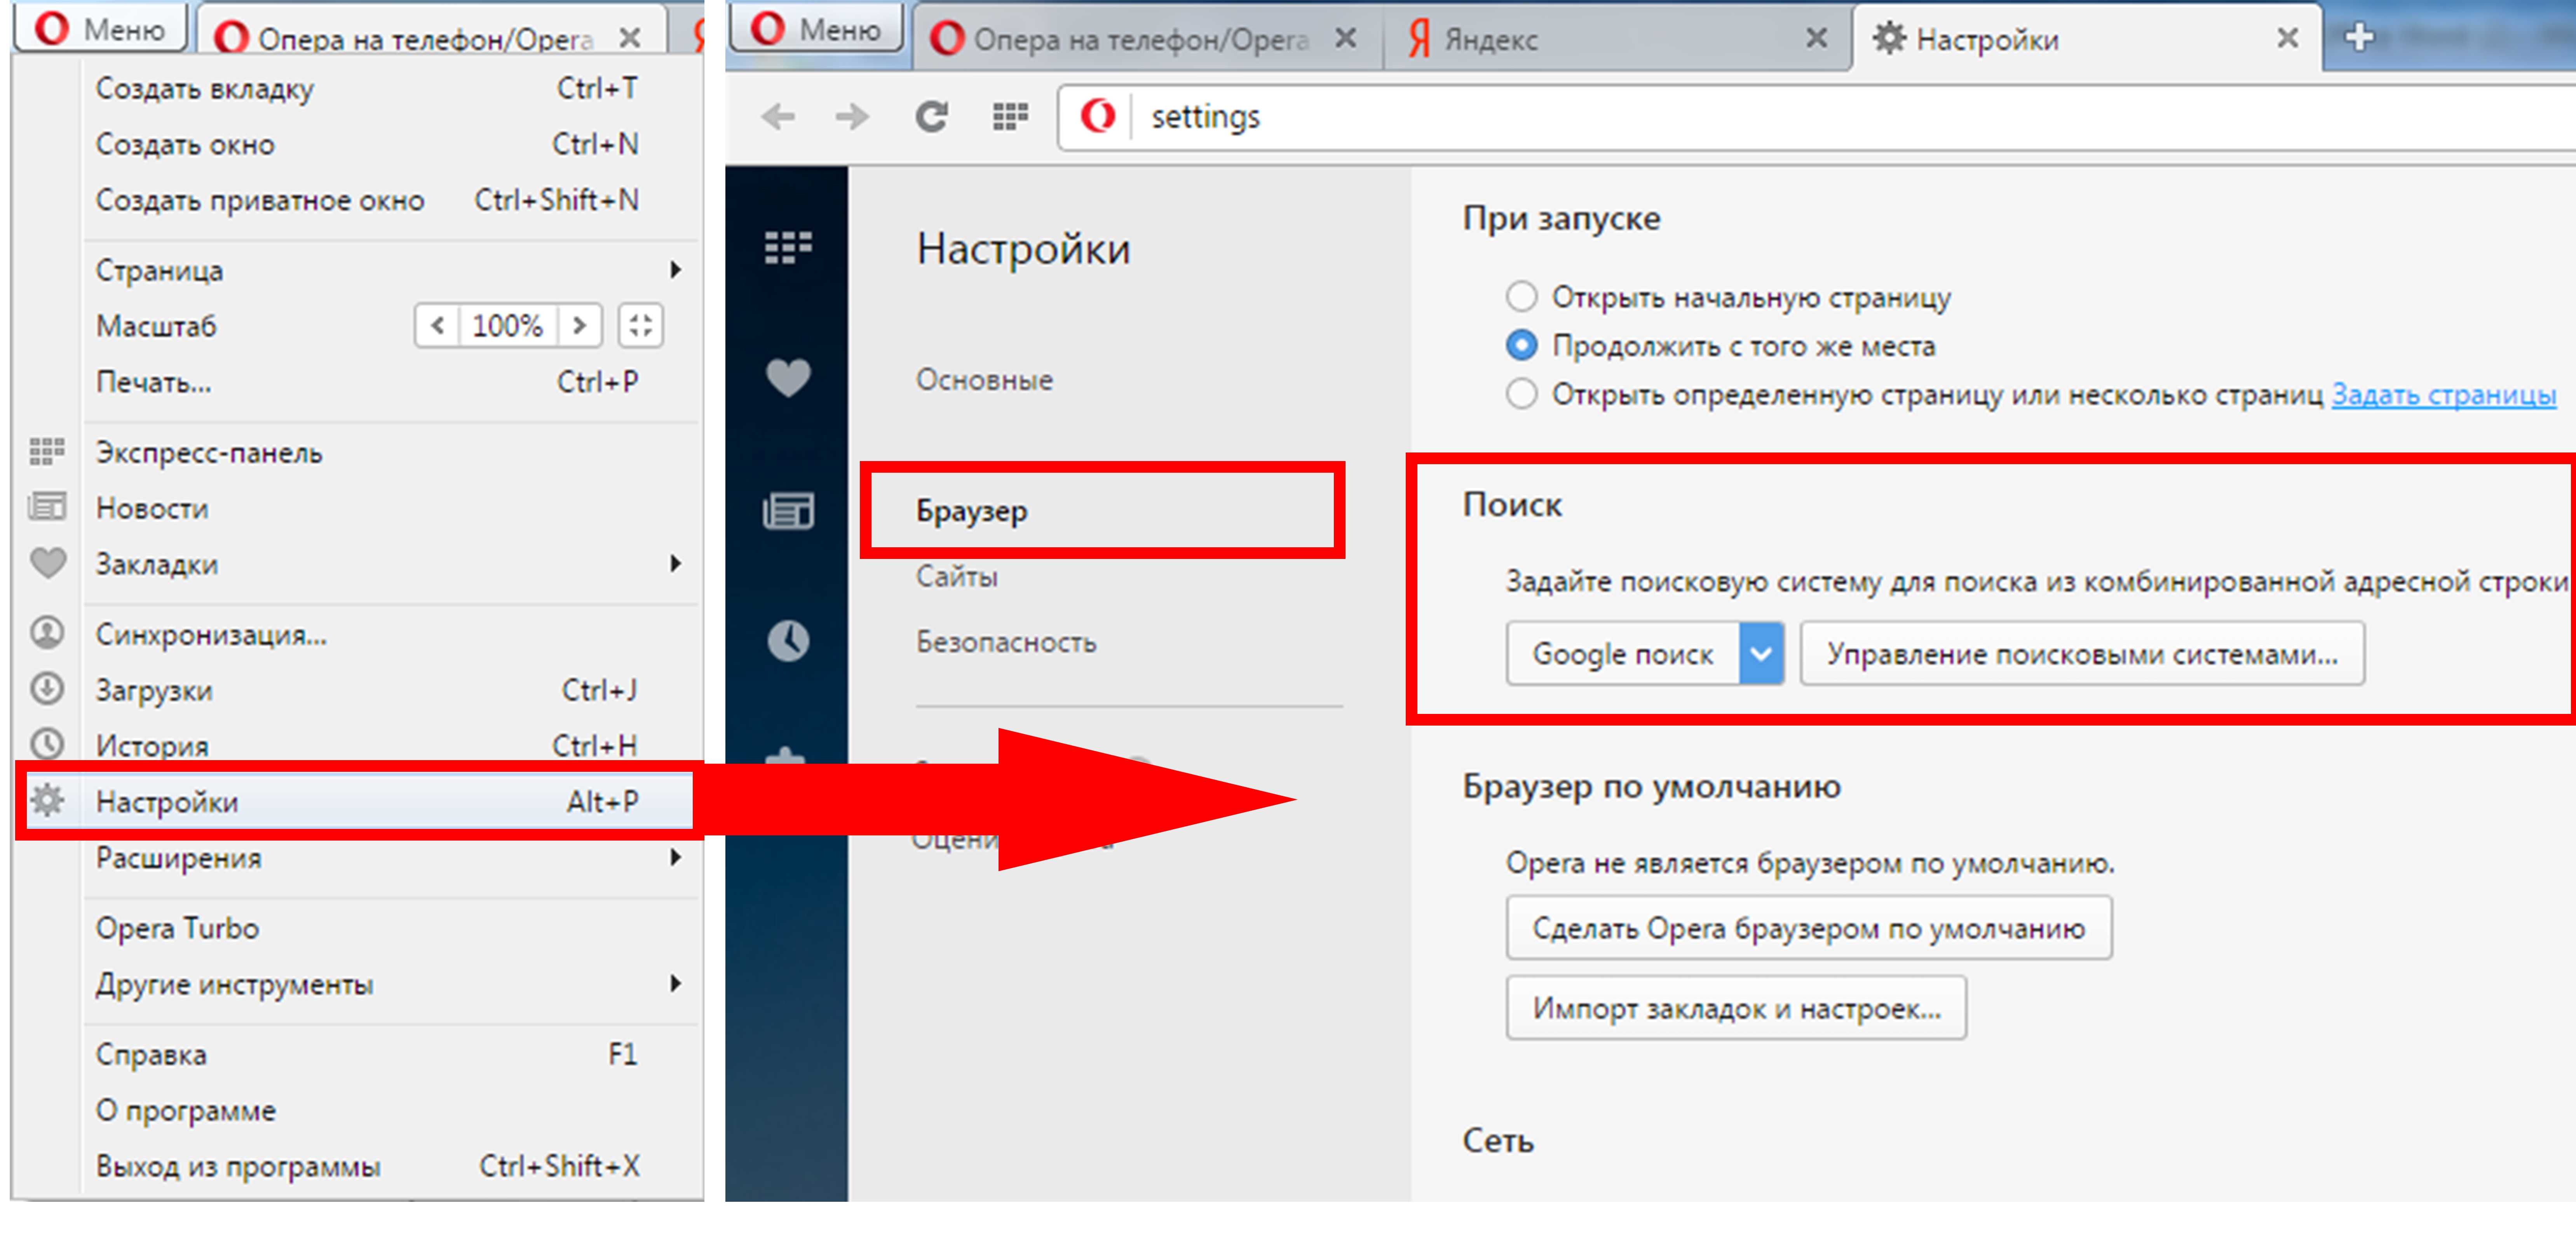 Что делать, если не работает поисковая система Яндекс в браузерах Хром, Яндекс или Опера Как убрать ошибку и нормально пользоваться поисковиком